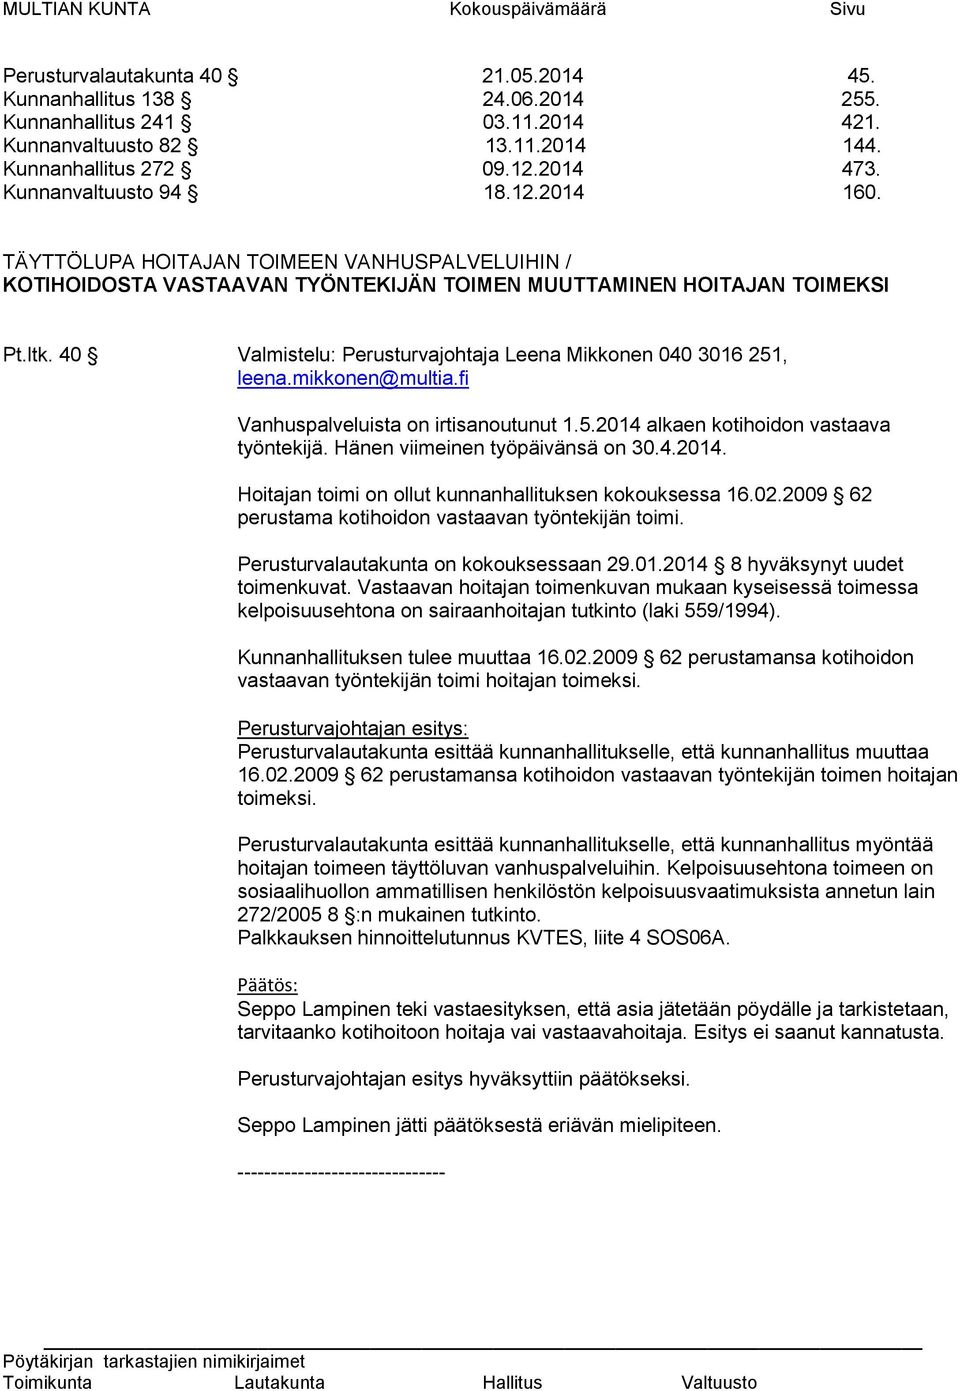 40 Valmistelu: Perusturvajohtaja Leena Mikkonen 040 3016 251, leena.mikkonen@multia.fi Vanhuspalveluista on irtisanoutunut 1.5.2014 alkaen kotihoidon vastaava työntekijä.